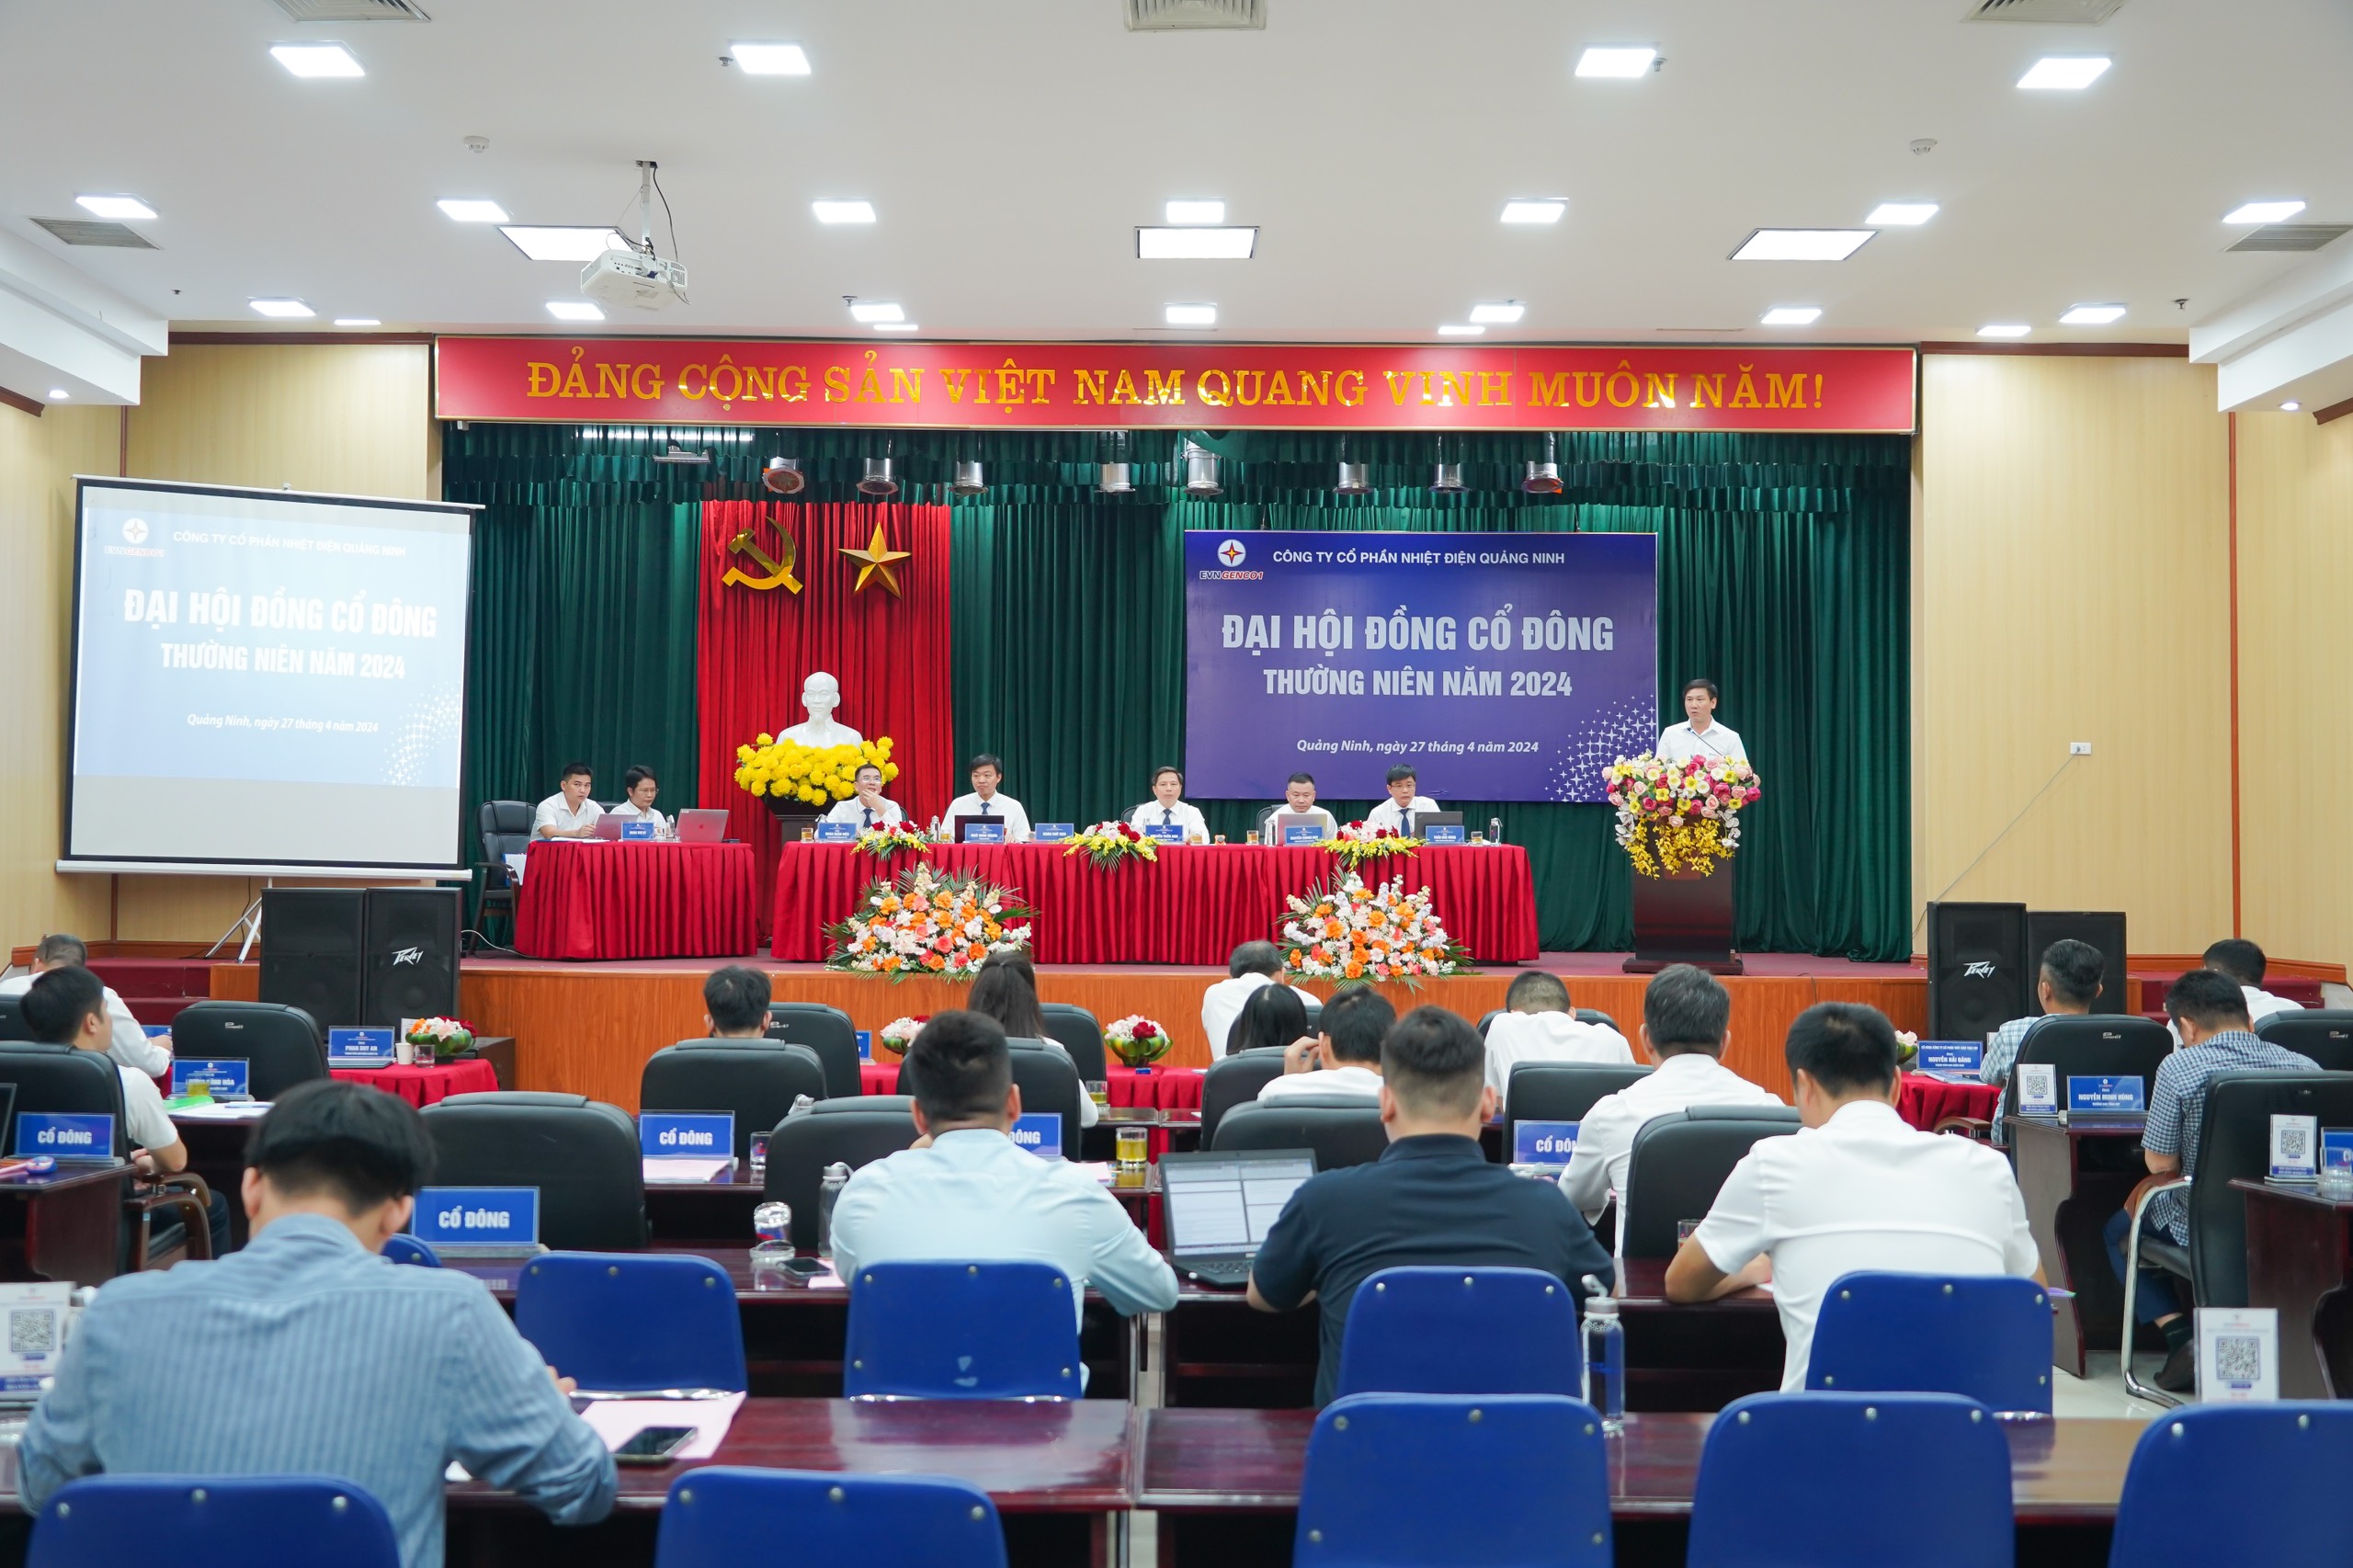 Đại hội đồng cổ đông thường niên năm 2024 Công ty CP Nhiệt điện Quảng Ninh- Ảnh 1.